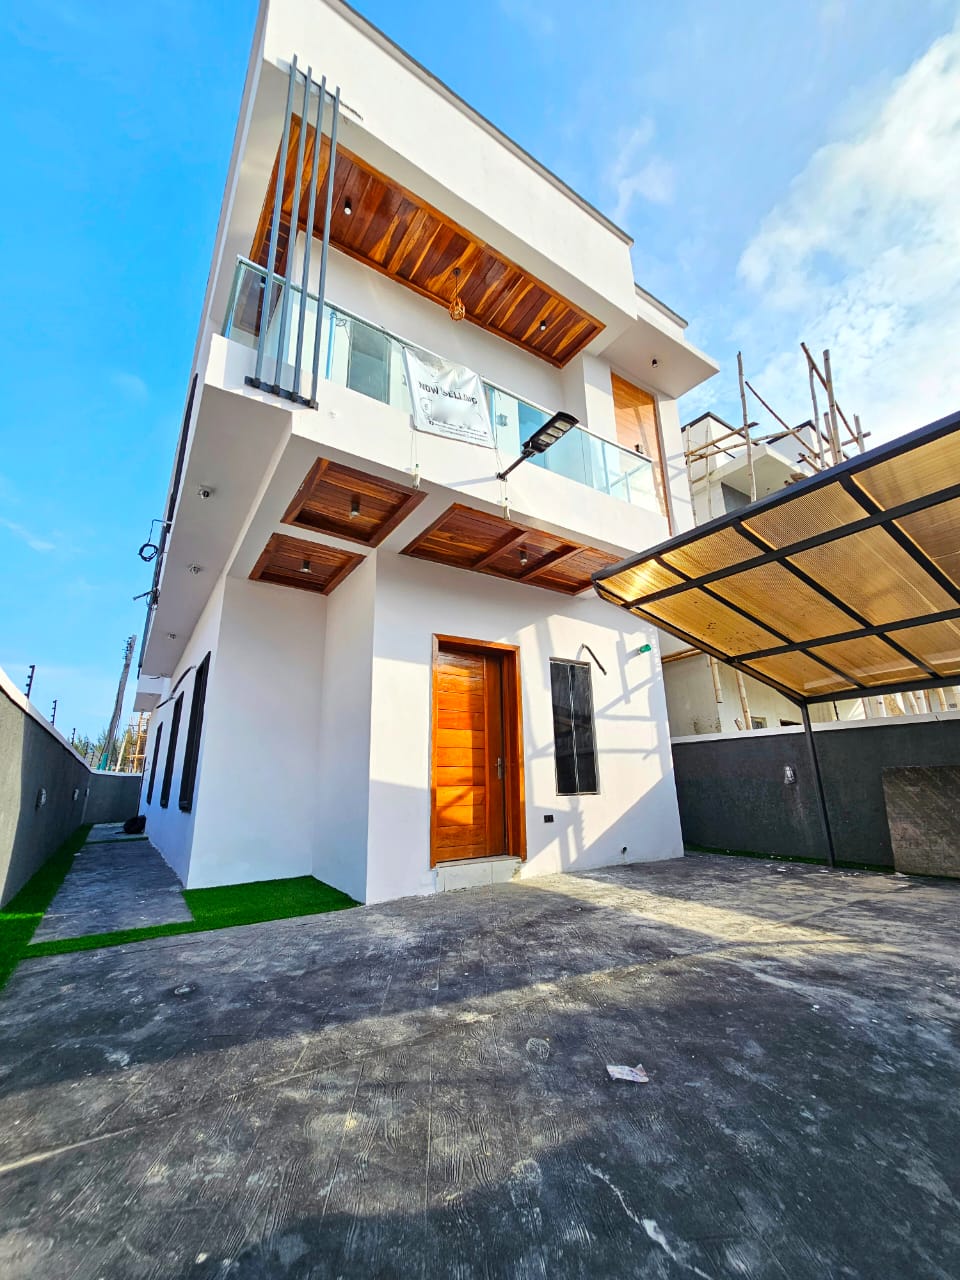 4-bedroom fully detached duplex in Ikota, Lekki, Lagos.